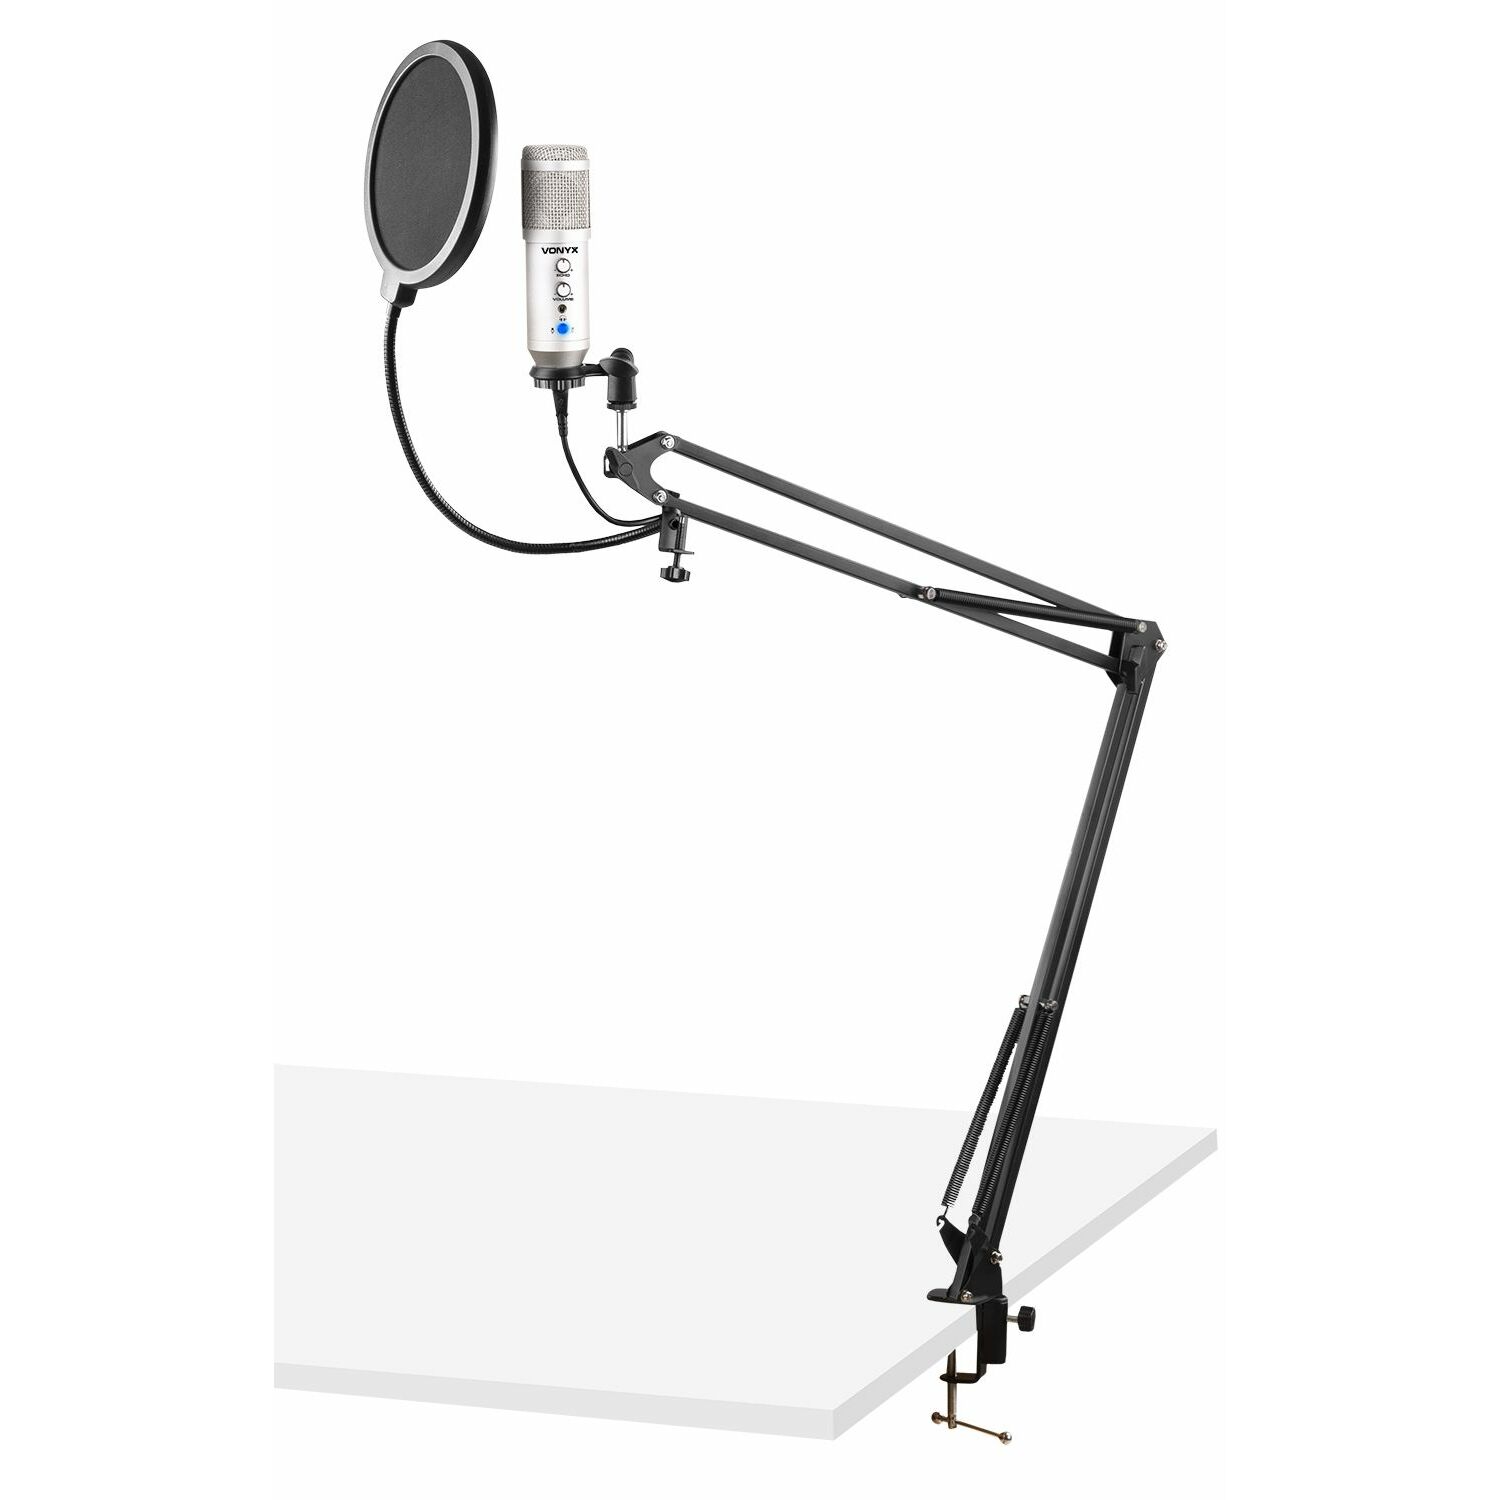 Studio microfoon - Vonyx CMS320S USB microfoon met echo en arm - Titanium